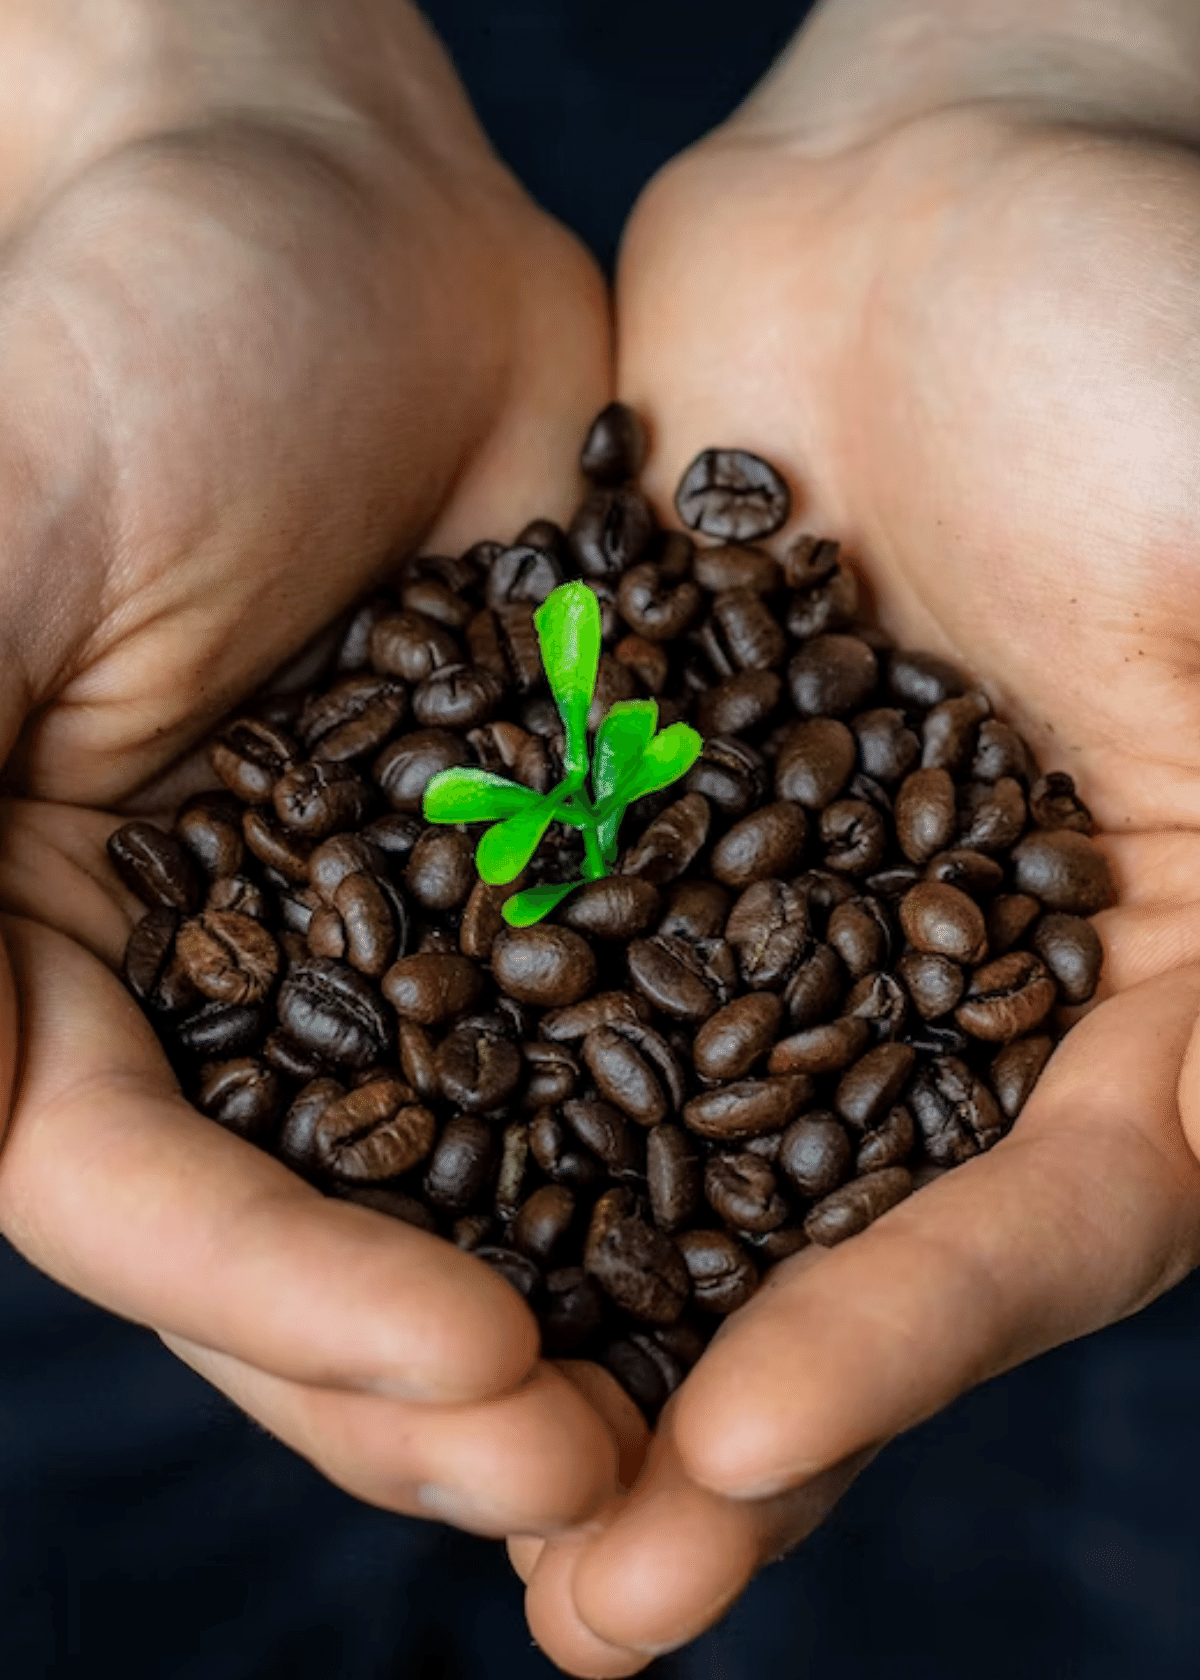 fair trade coffee